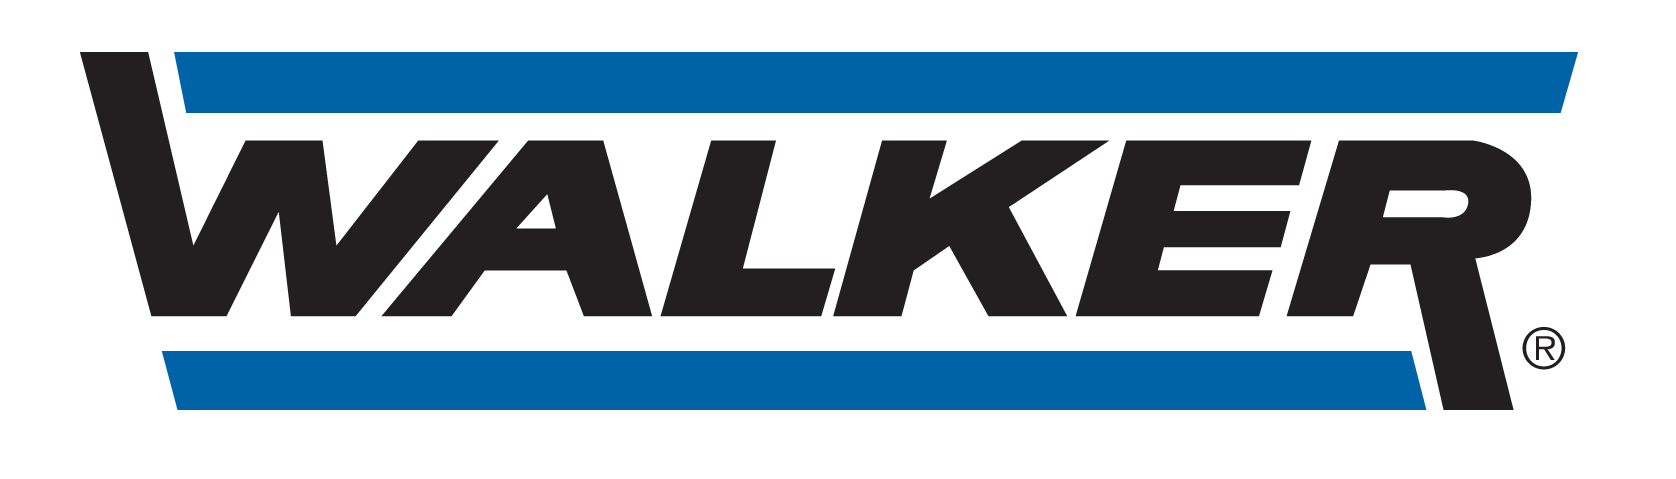 GARAGE SERVICES PLUS - logo Walker